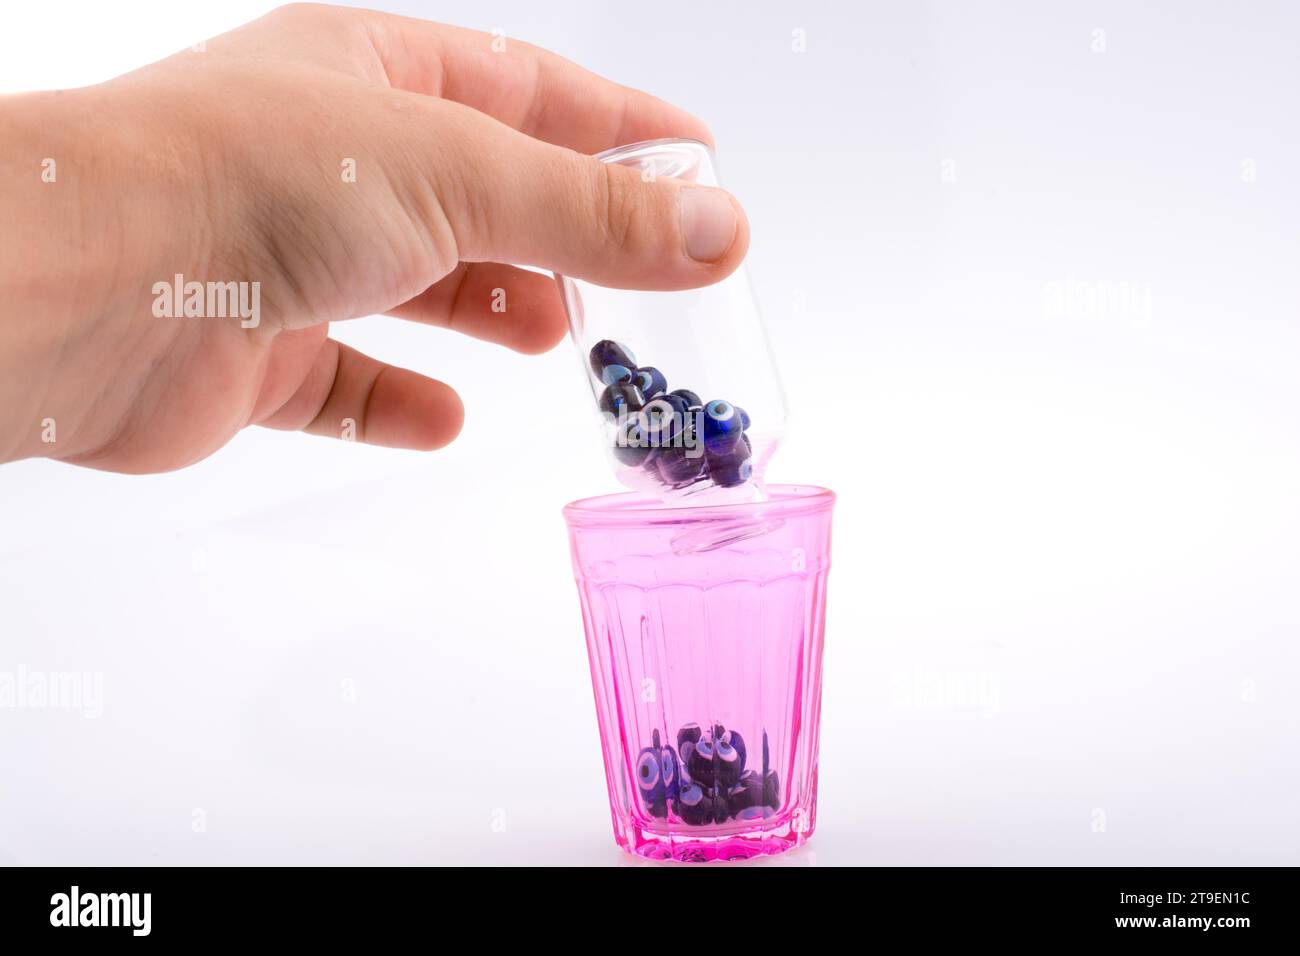 Piccola bottiglia di vetro con il perla dell'occhio malvagio blu in mano Foto Stock